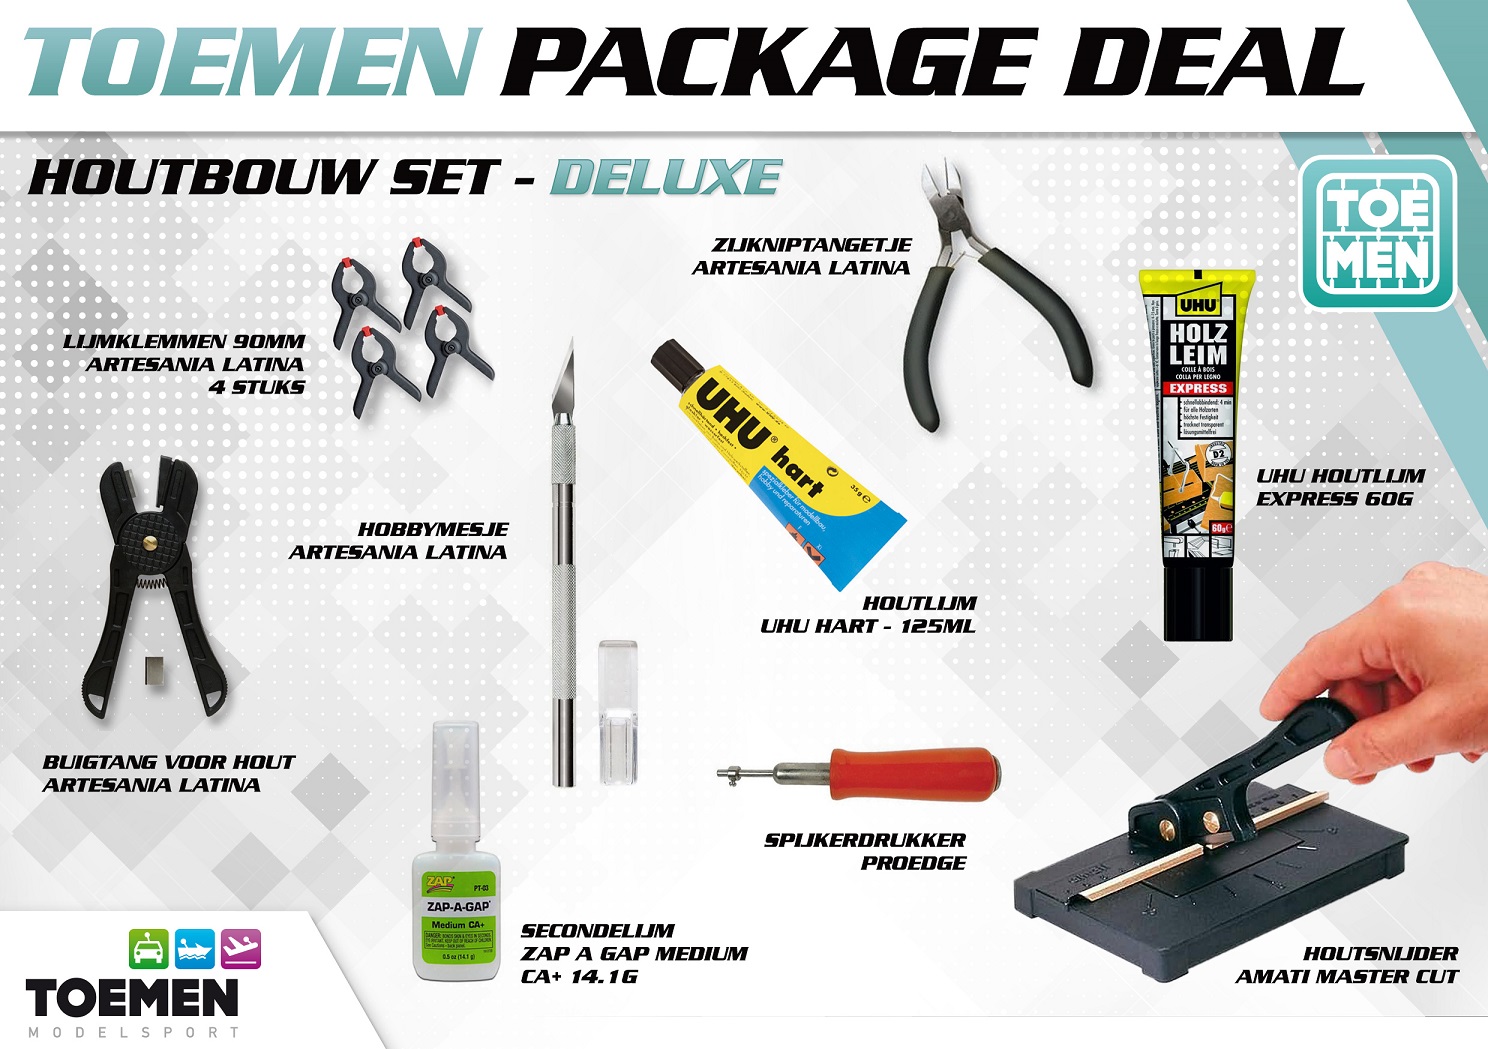 Toemen Package Deal Houtbouw set - Deluxe (9 stuks)